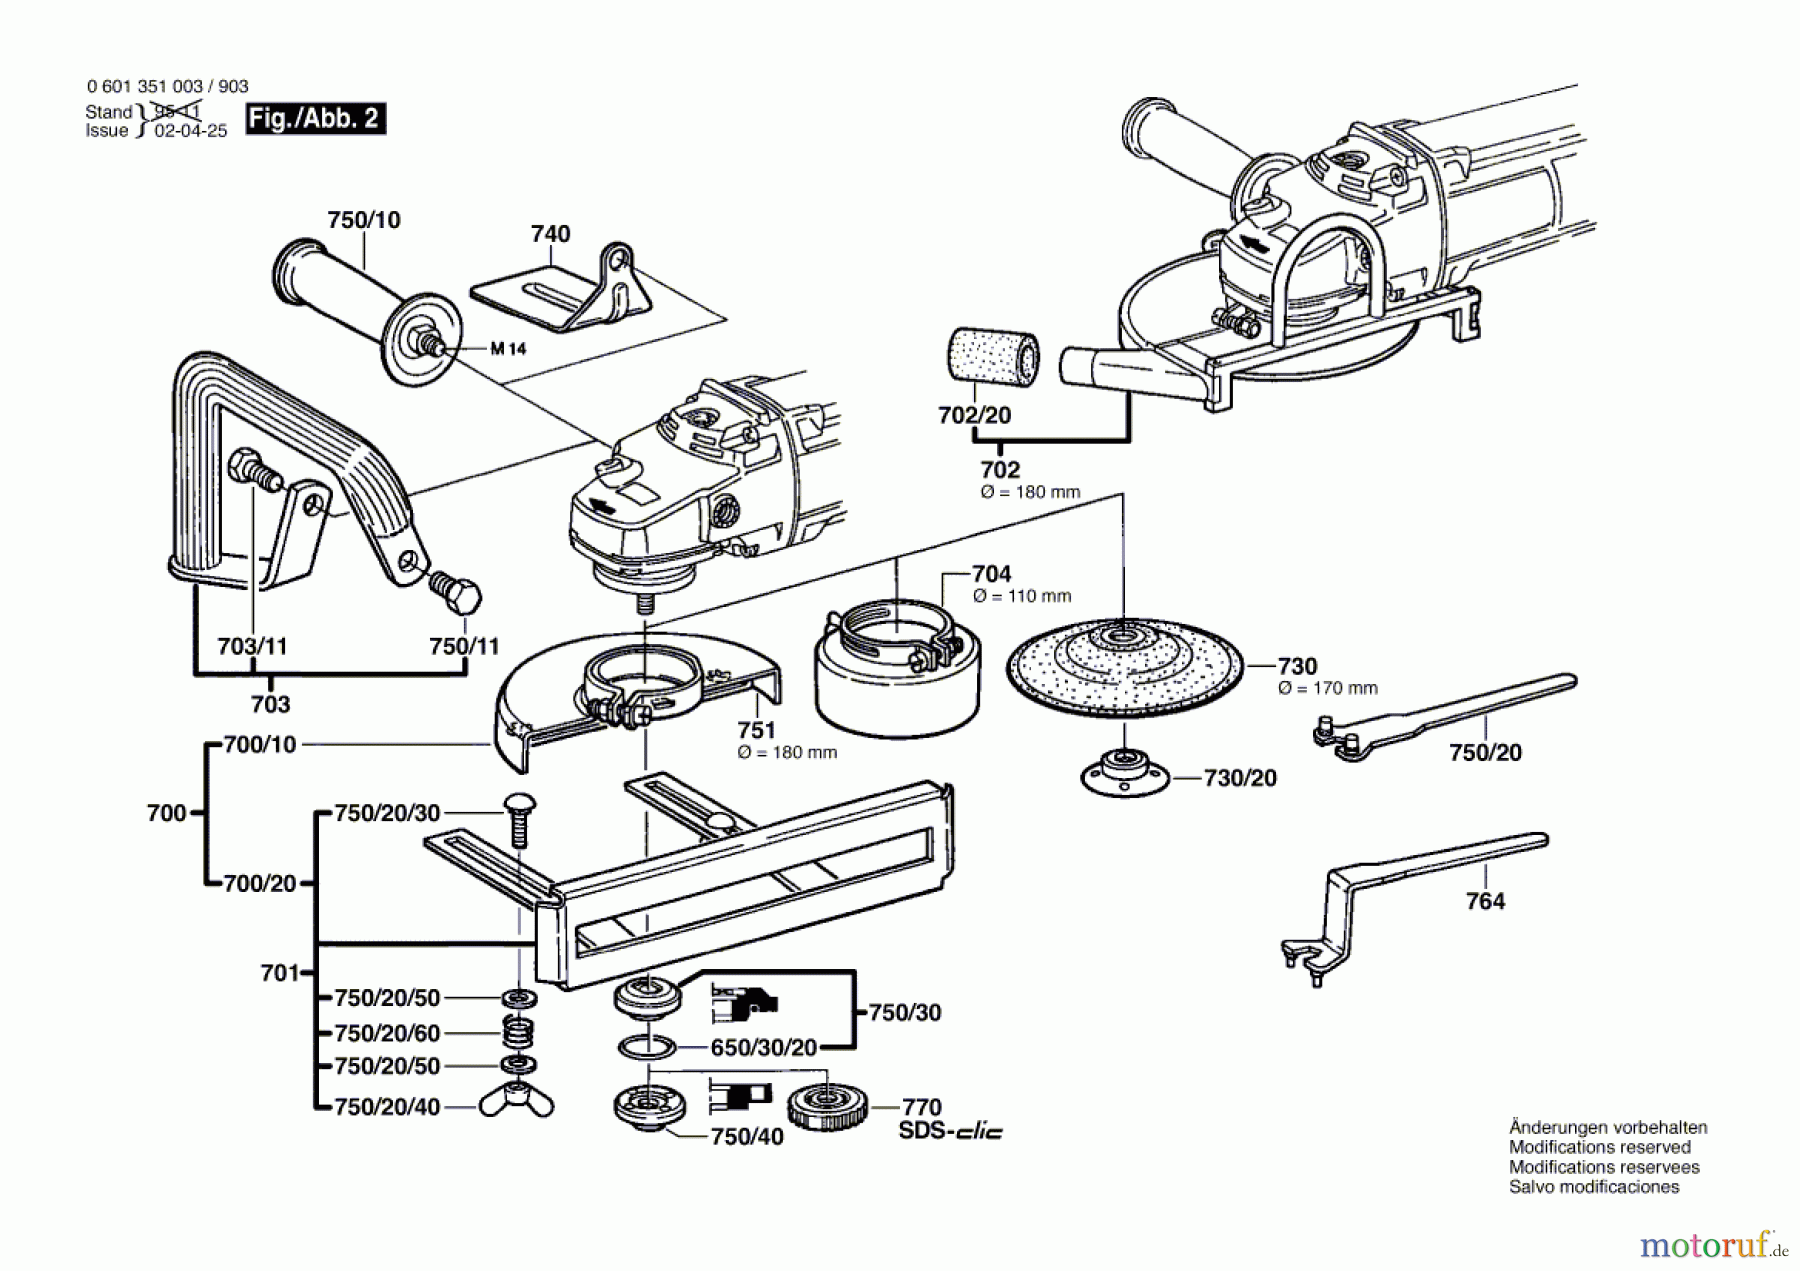  Bosch Werkzeug Winkelschleifer GWS 18-180 Seite 2